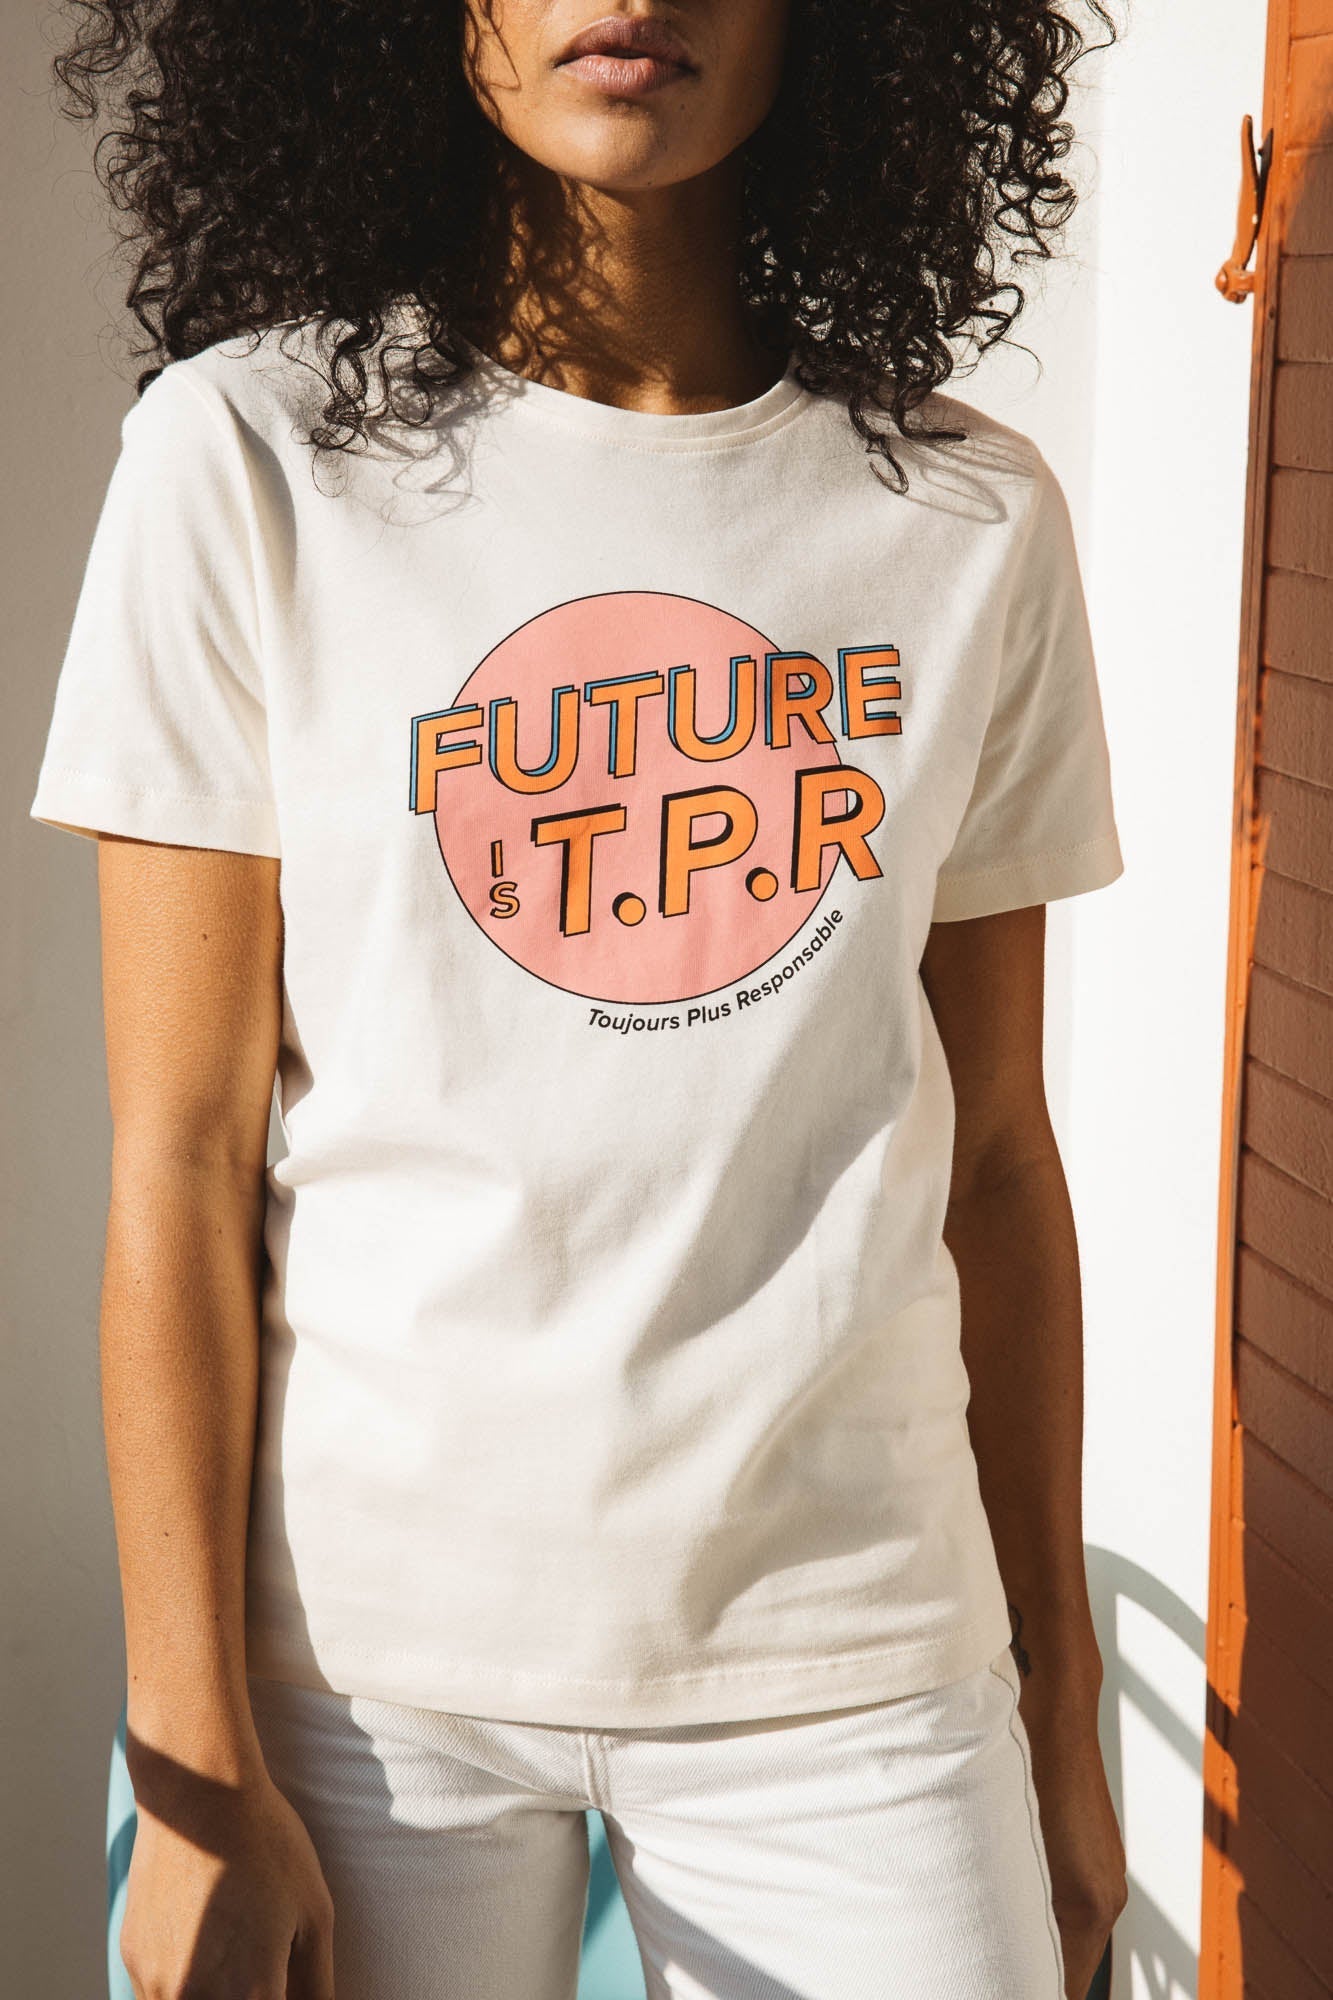 Tee-shirt Futur Is T.P.R